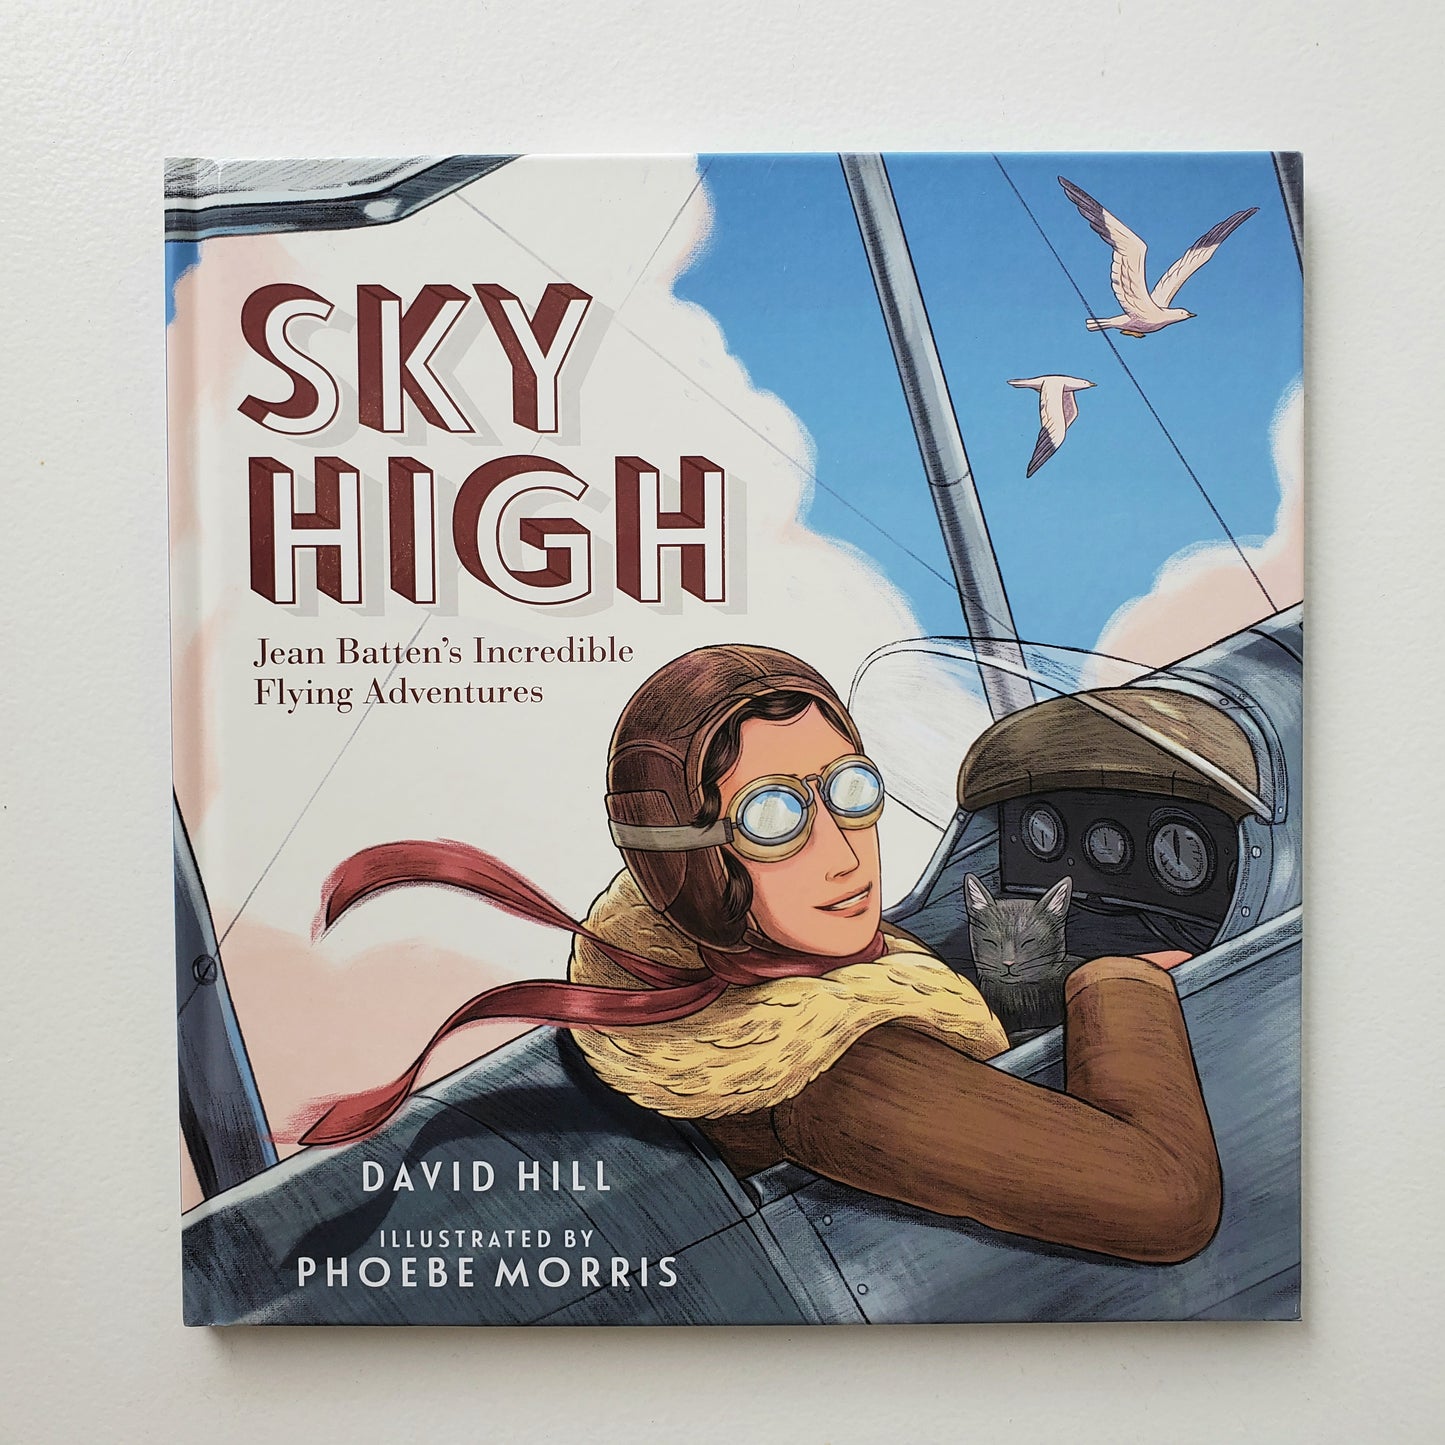 Sky High - Jean Batten's Incredible Flying Adventures